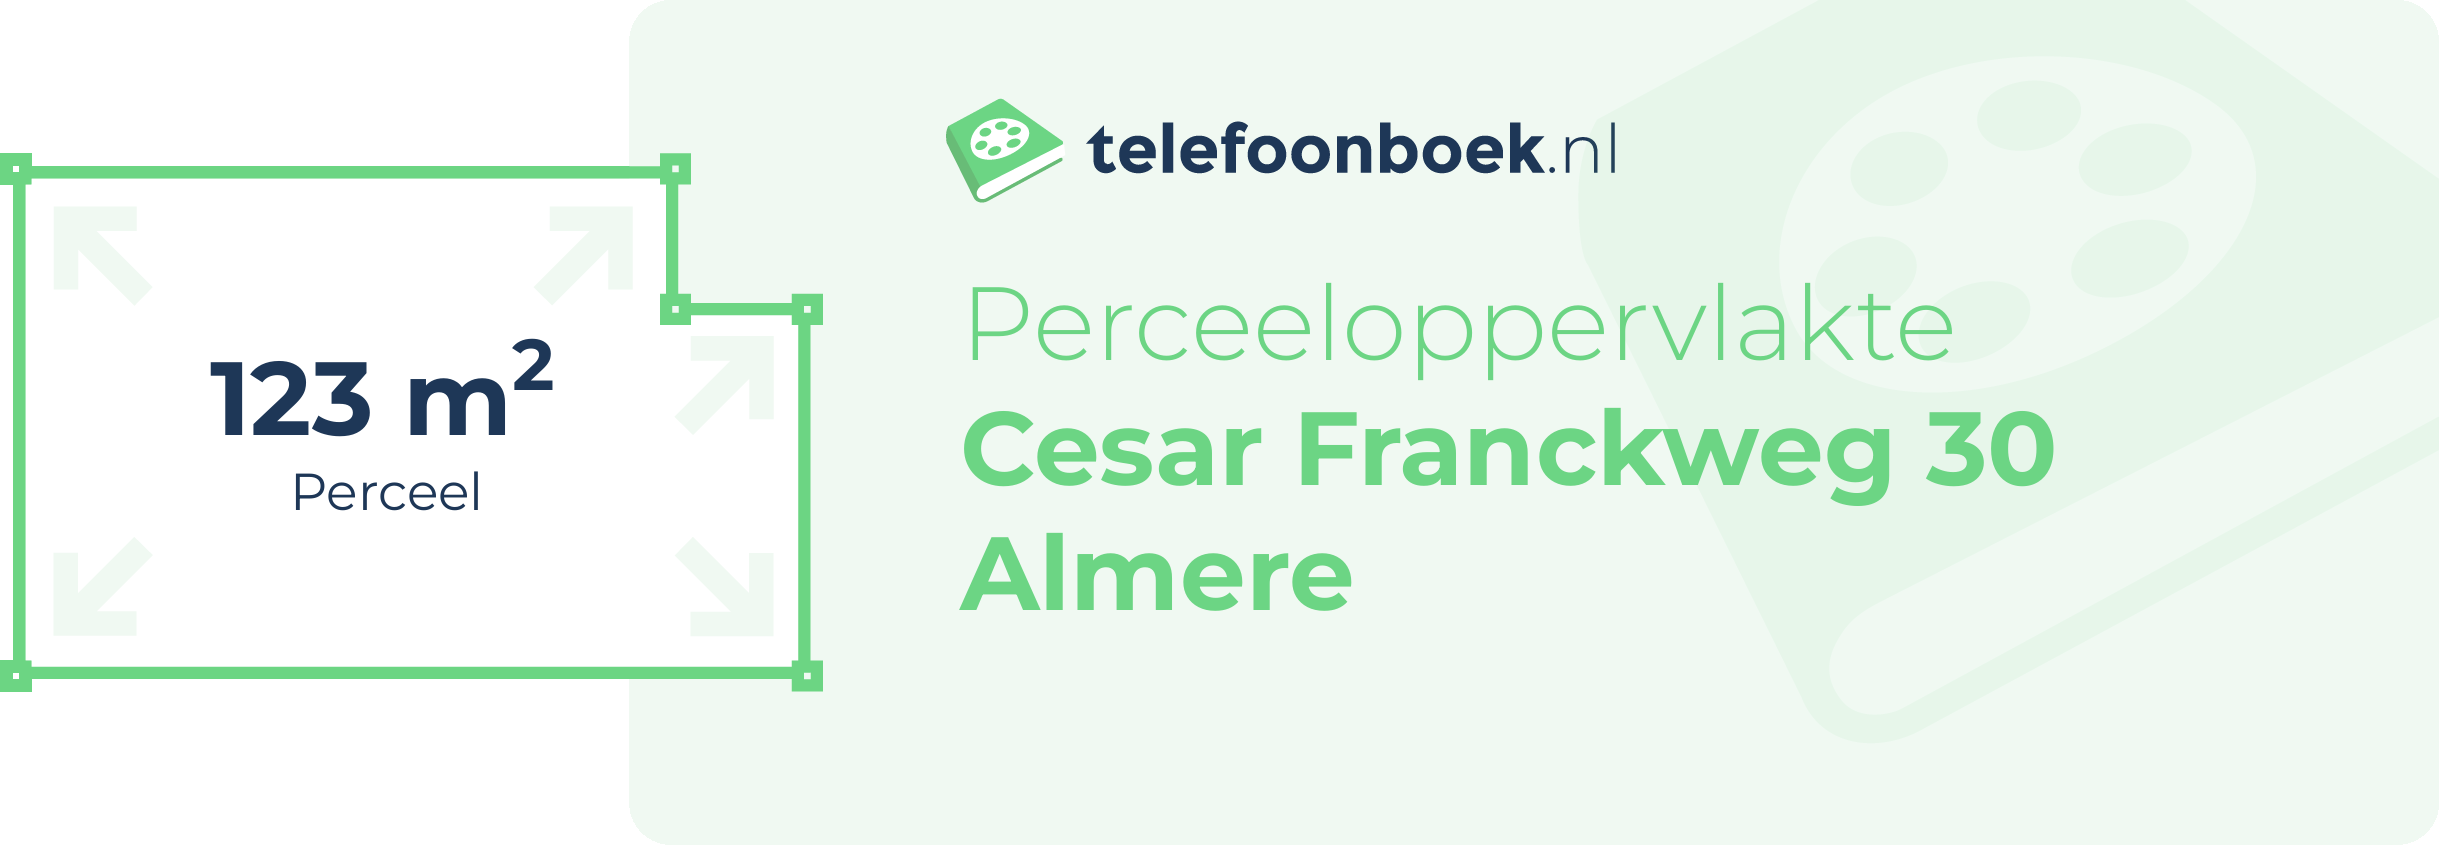 Perceeloppervlakte Cesar Franckweg 30 Almere